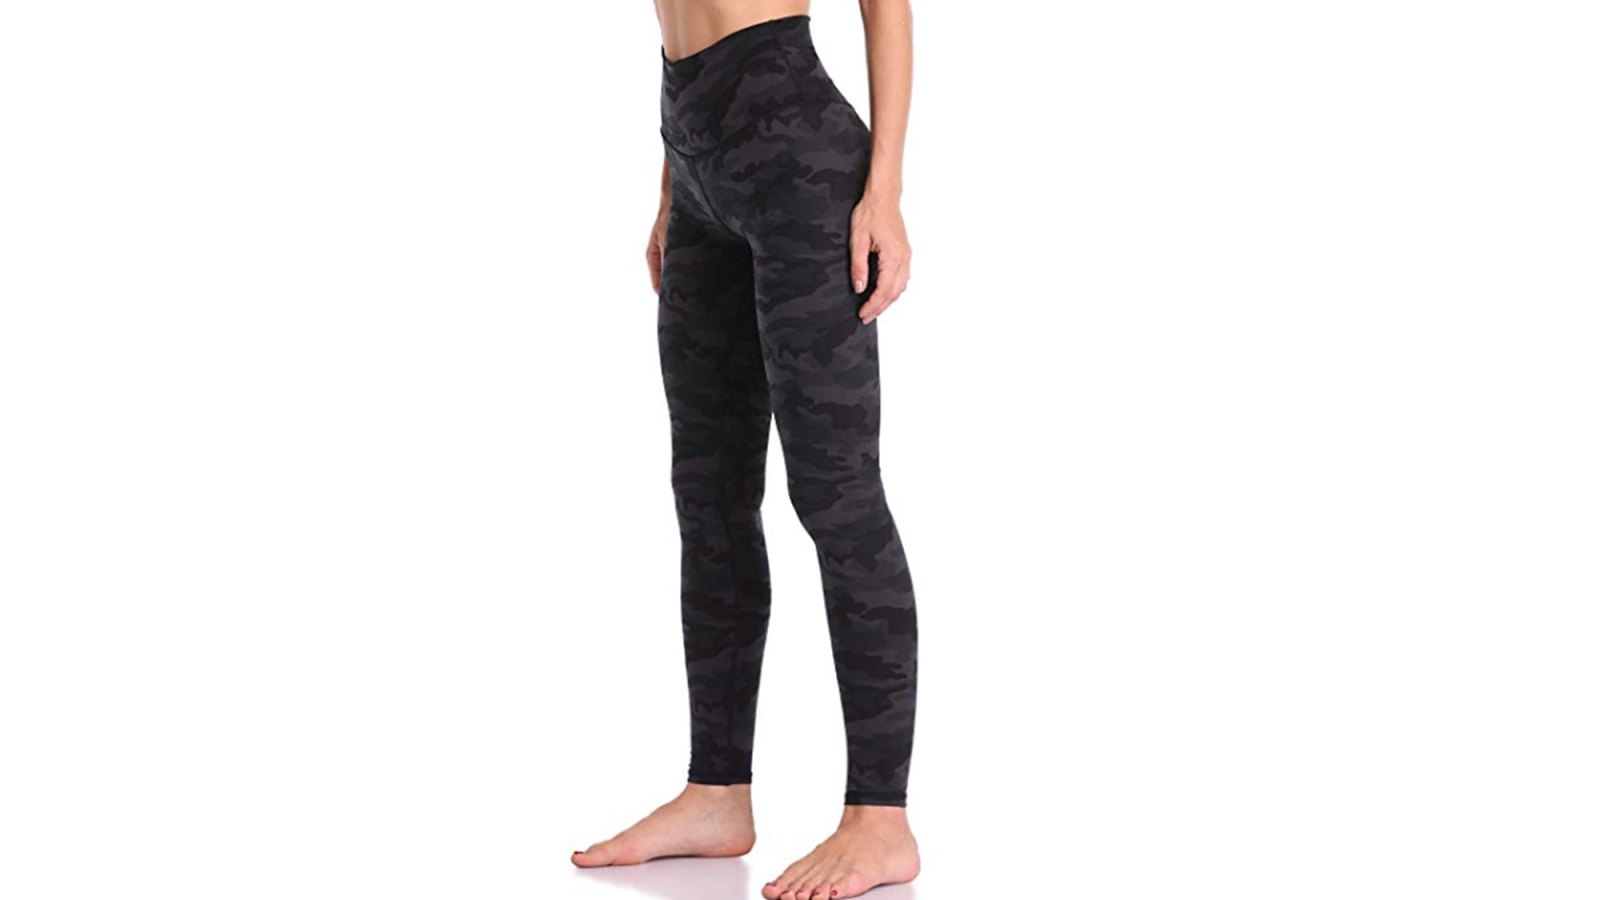 Colorfulkoala Women's High Waisted Full-Length Yoga Pants